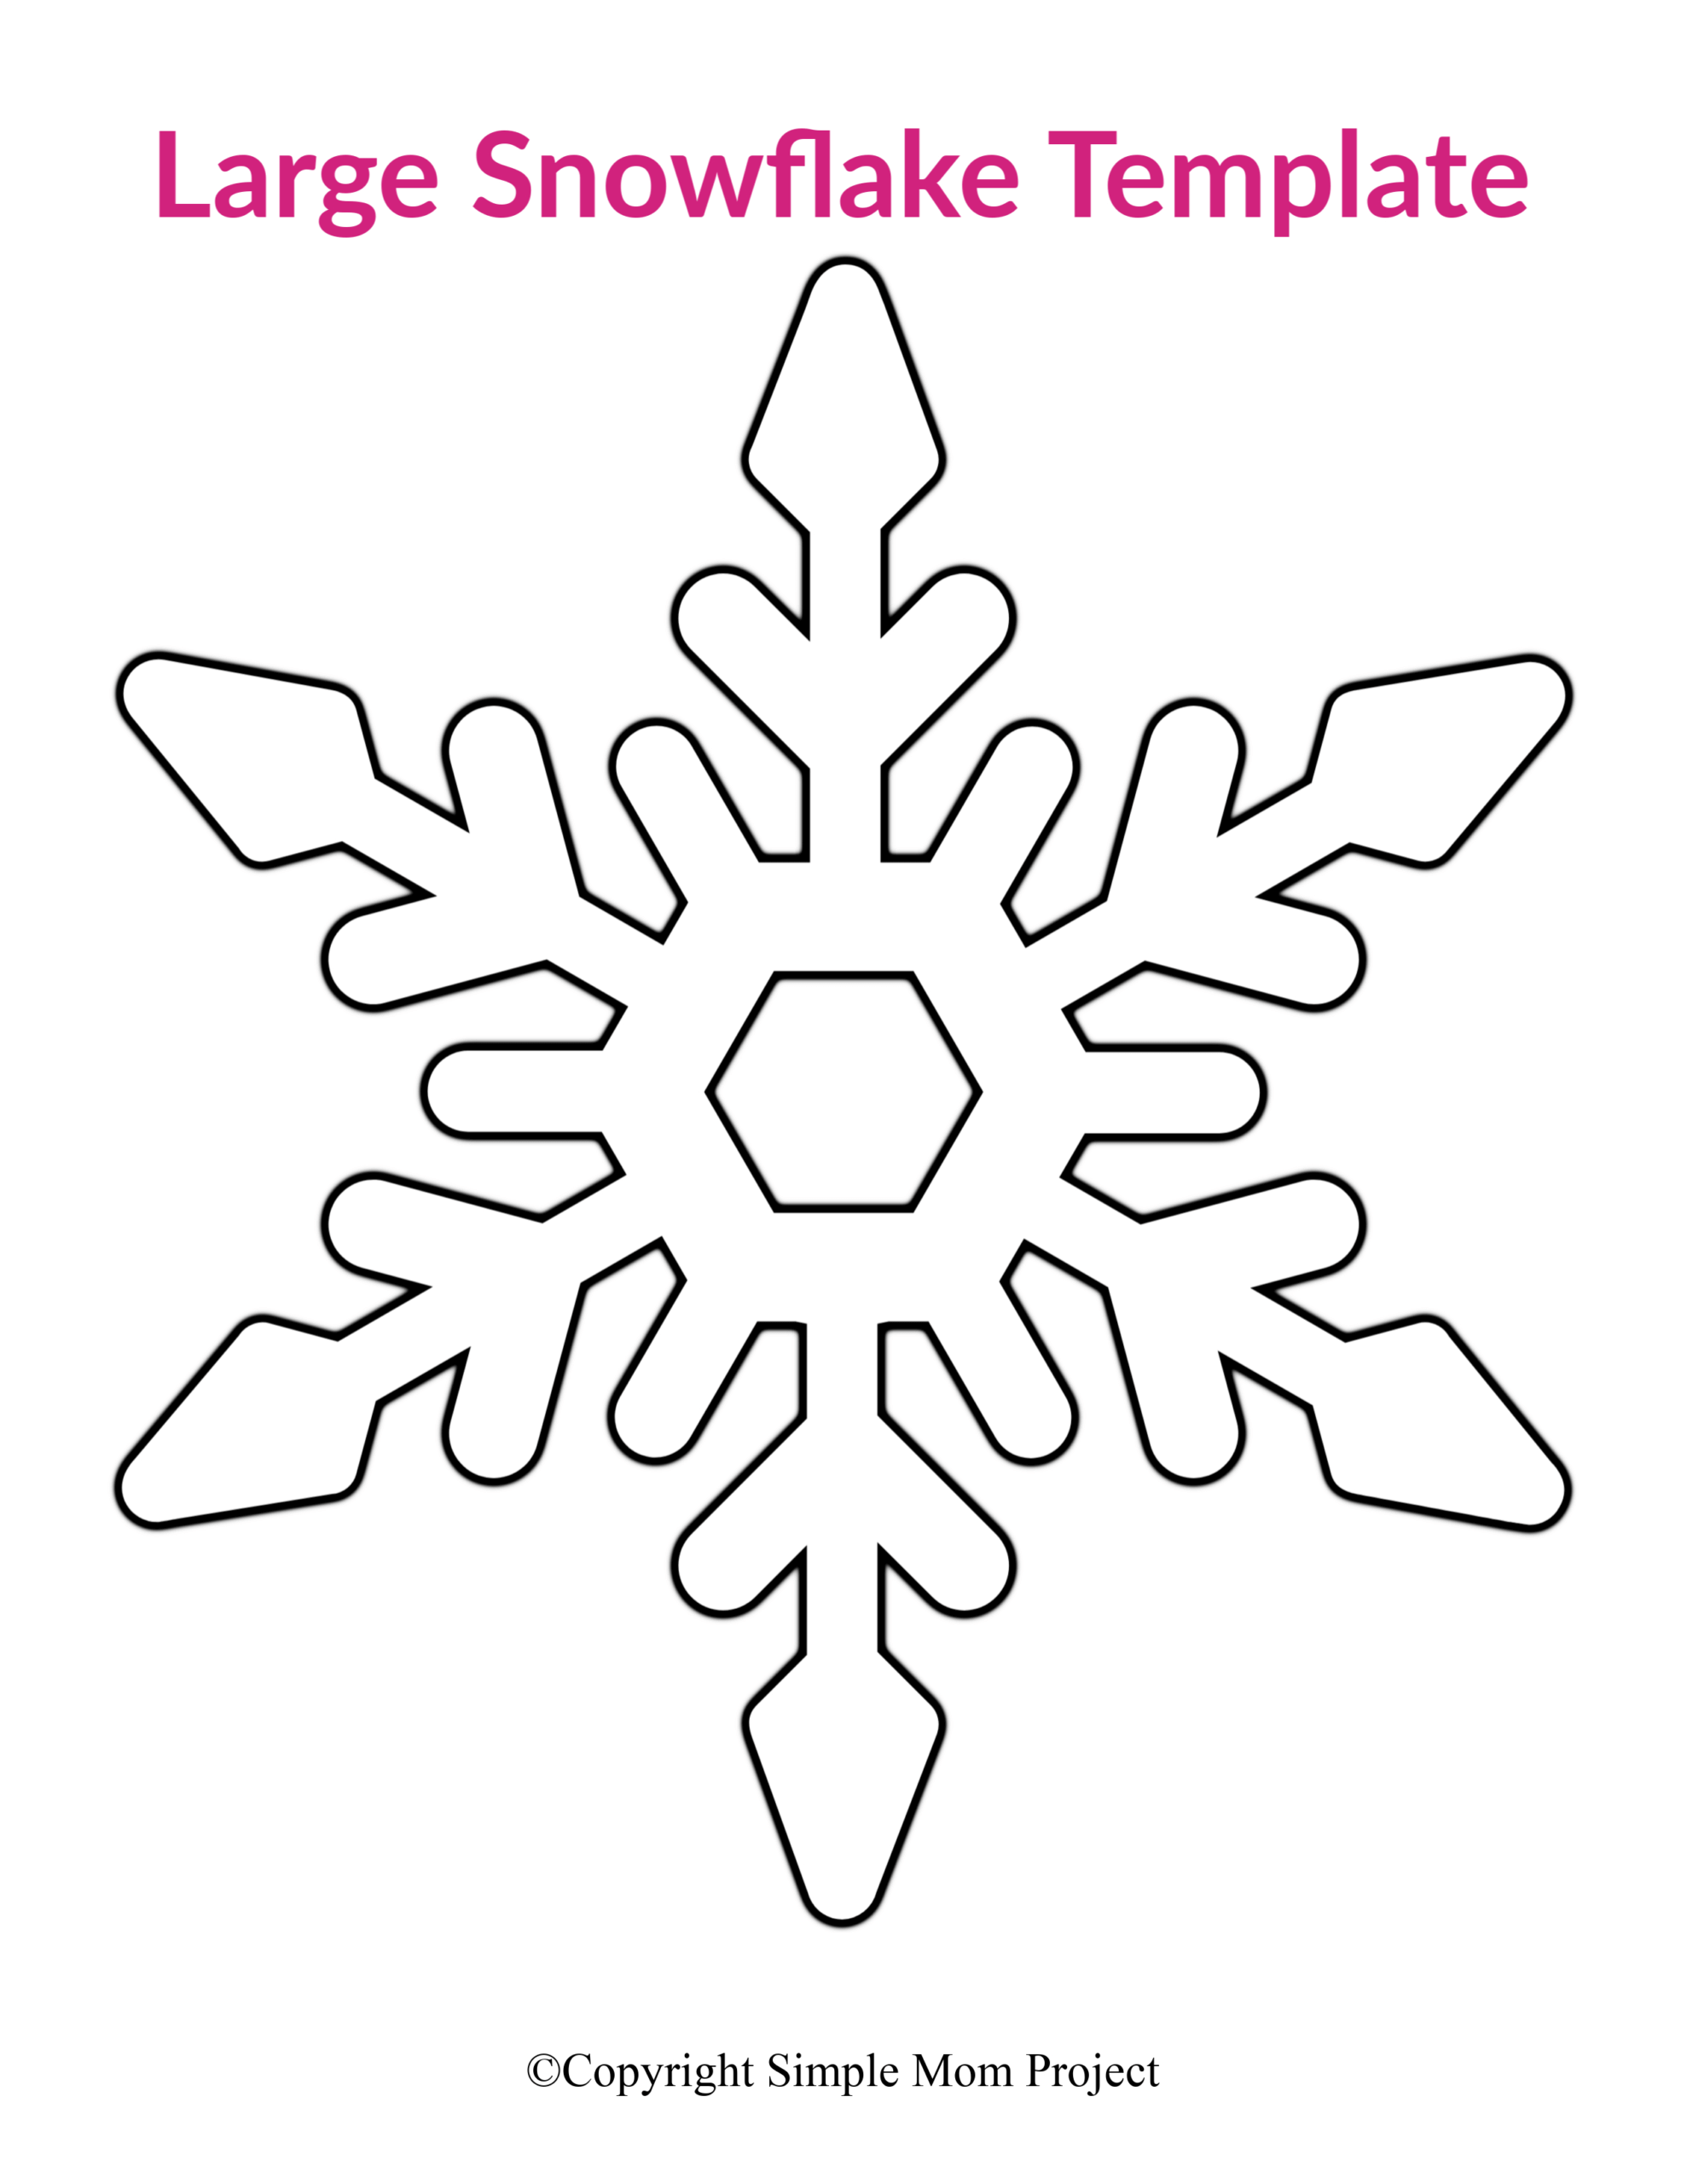 Snowflake Templates Printable Free